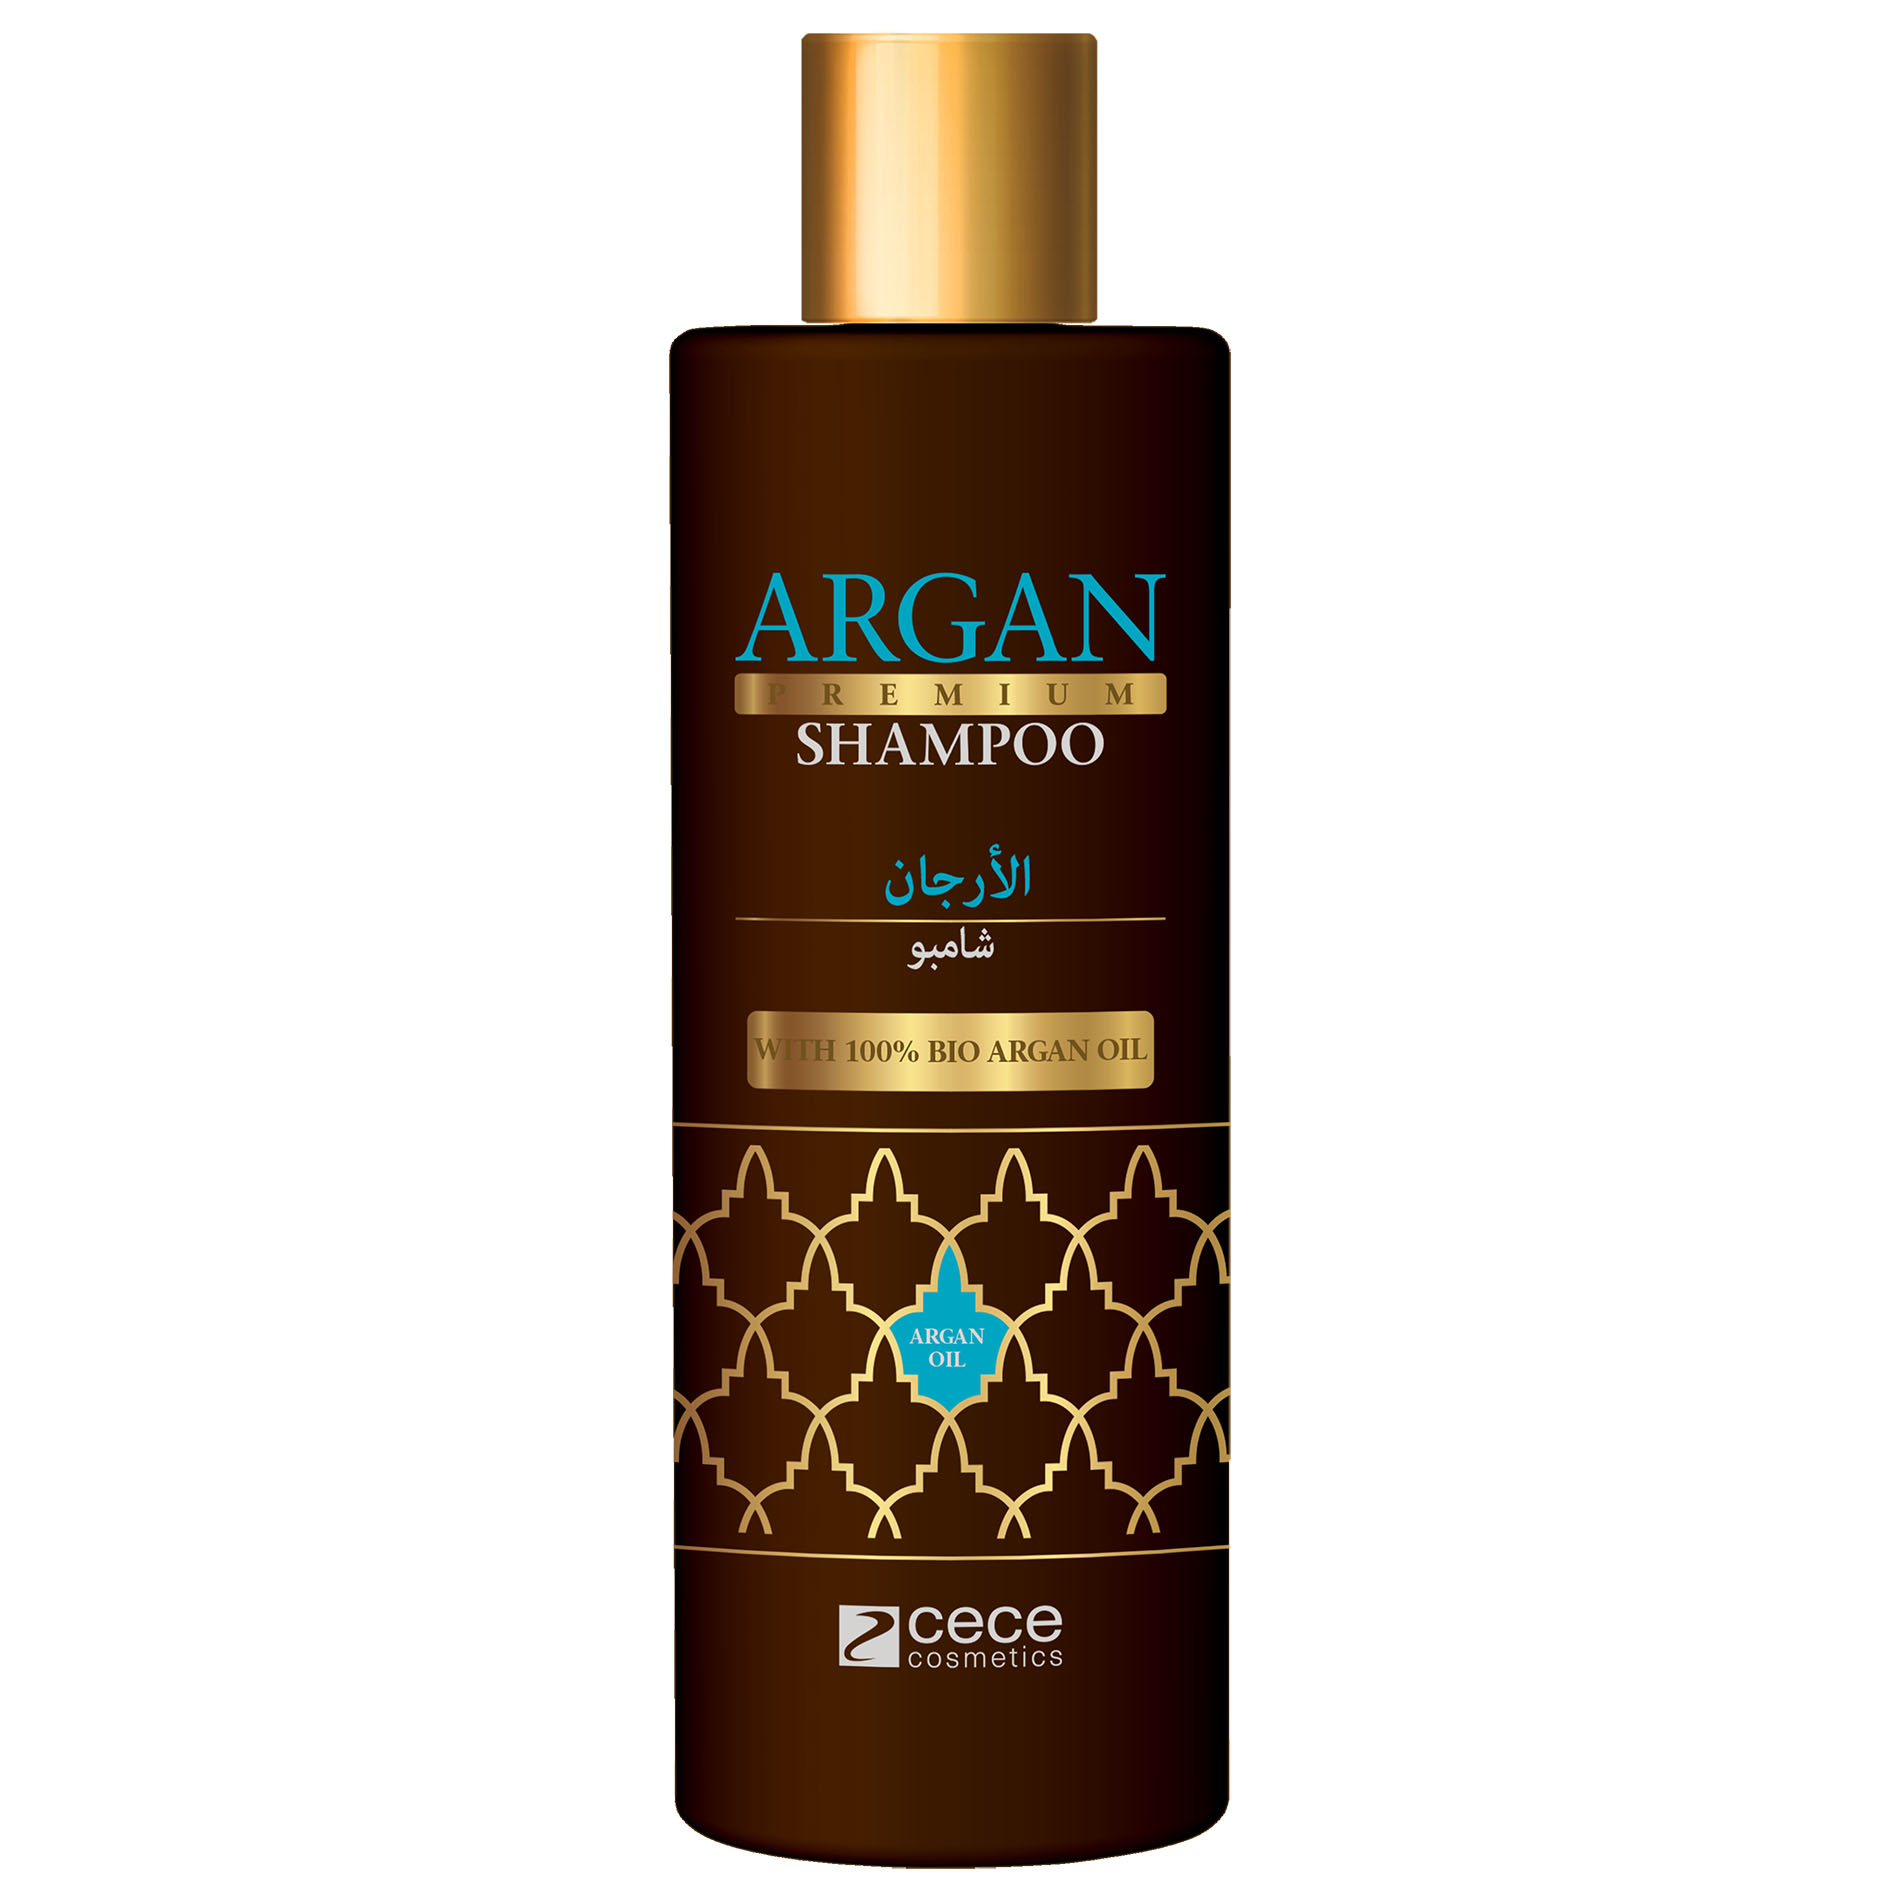 cece of sweden argan szampon do włosów 300 ml